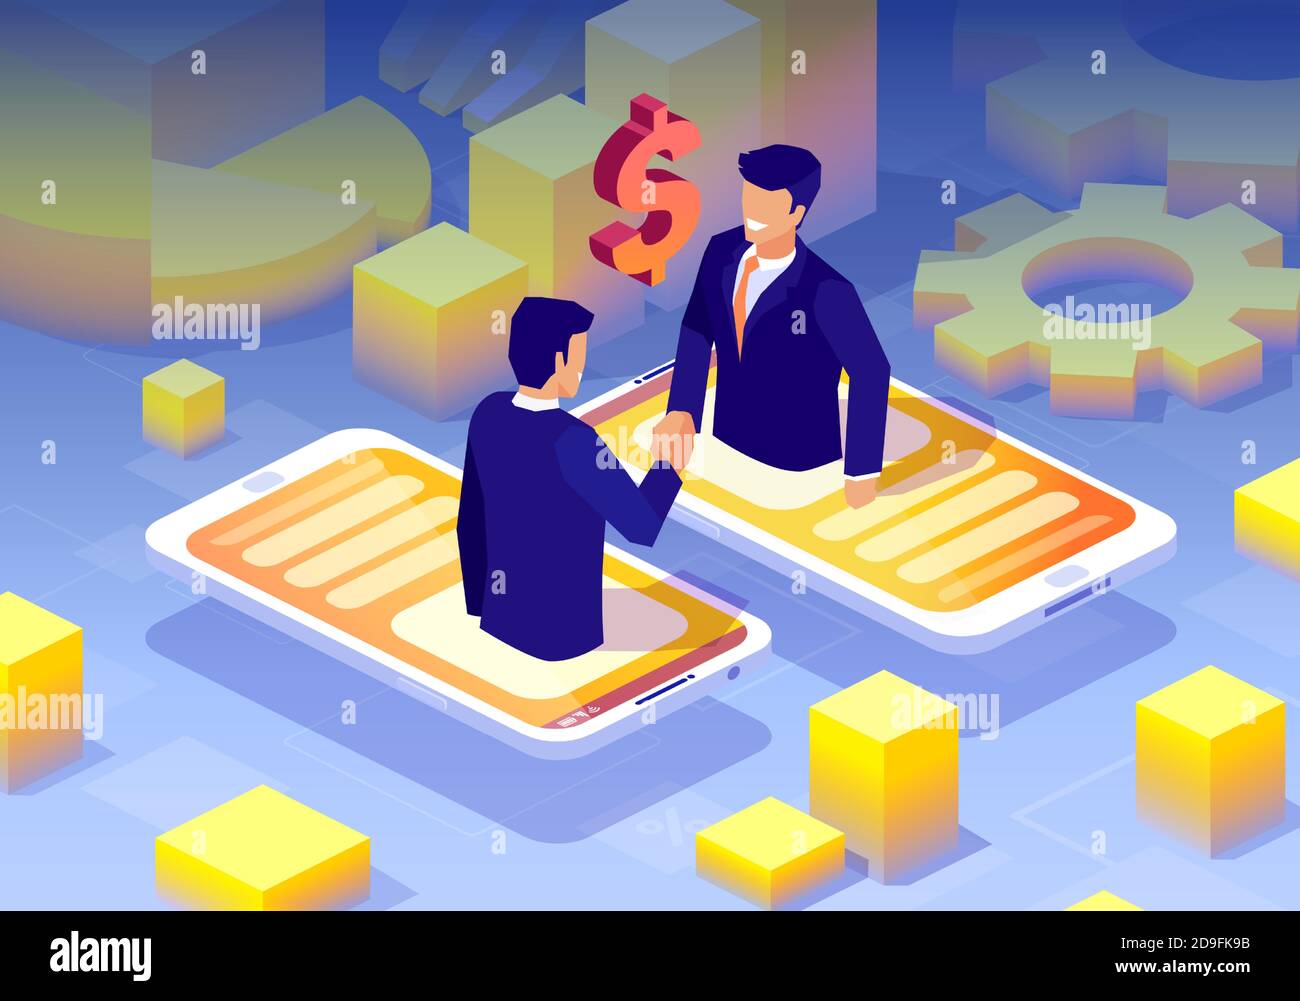 Vecteur d'une négociation en ligne entre deux hommes d'affaires via technologie d'application mobile Illustration de Vecteur